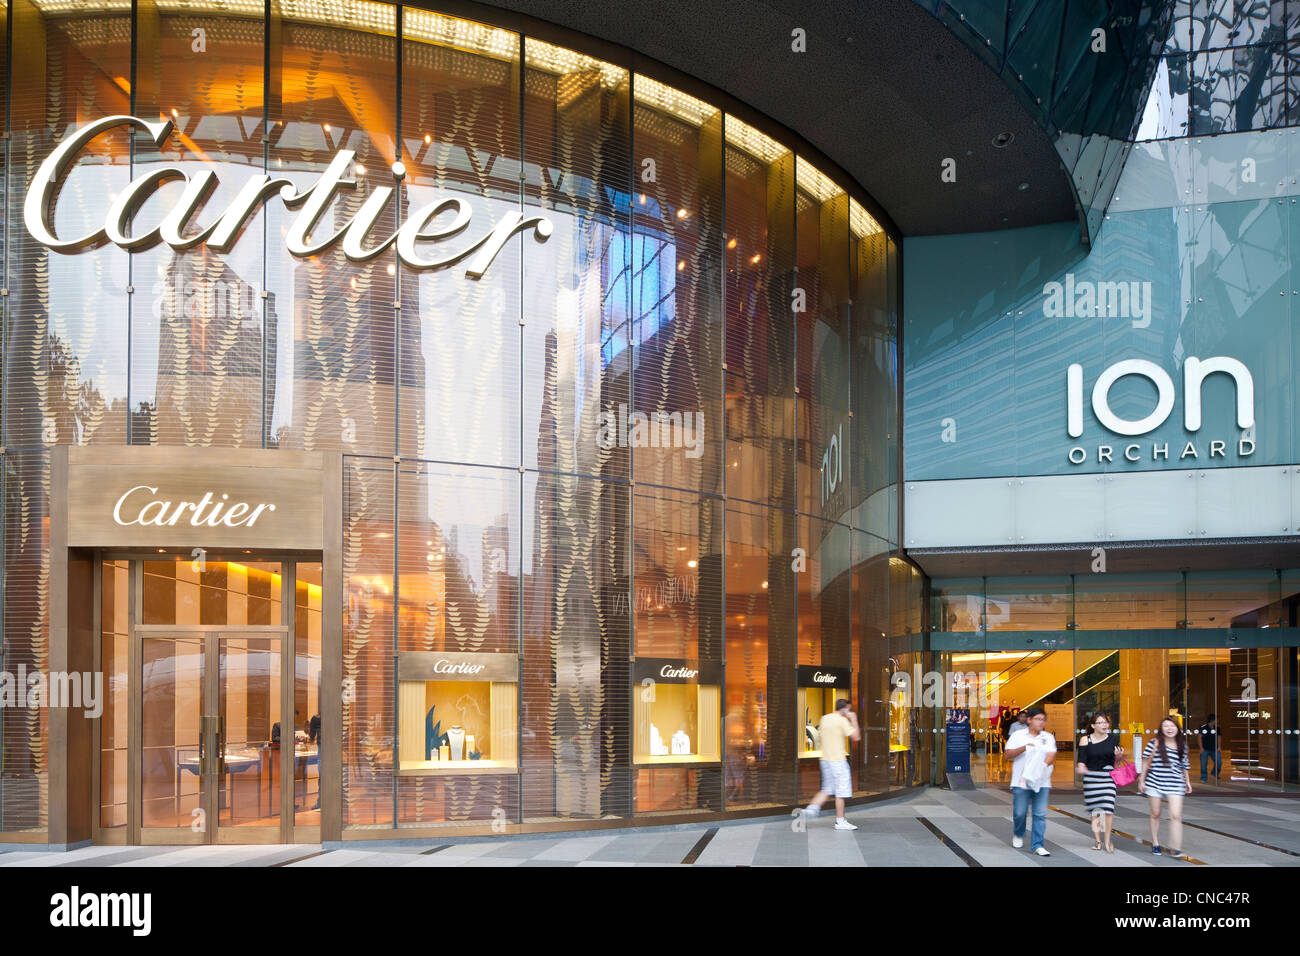 Singapur, Orchard Road, ION Orchard, Shopping-Mall im Jahr 2009 eröffnet, Cartier laden, eine Marke gegründet 1847 von Louis-François Stockfoto